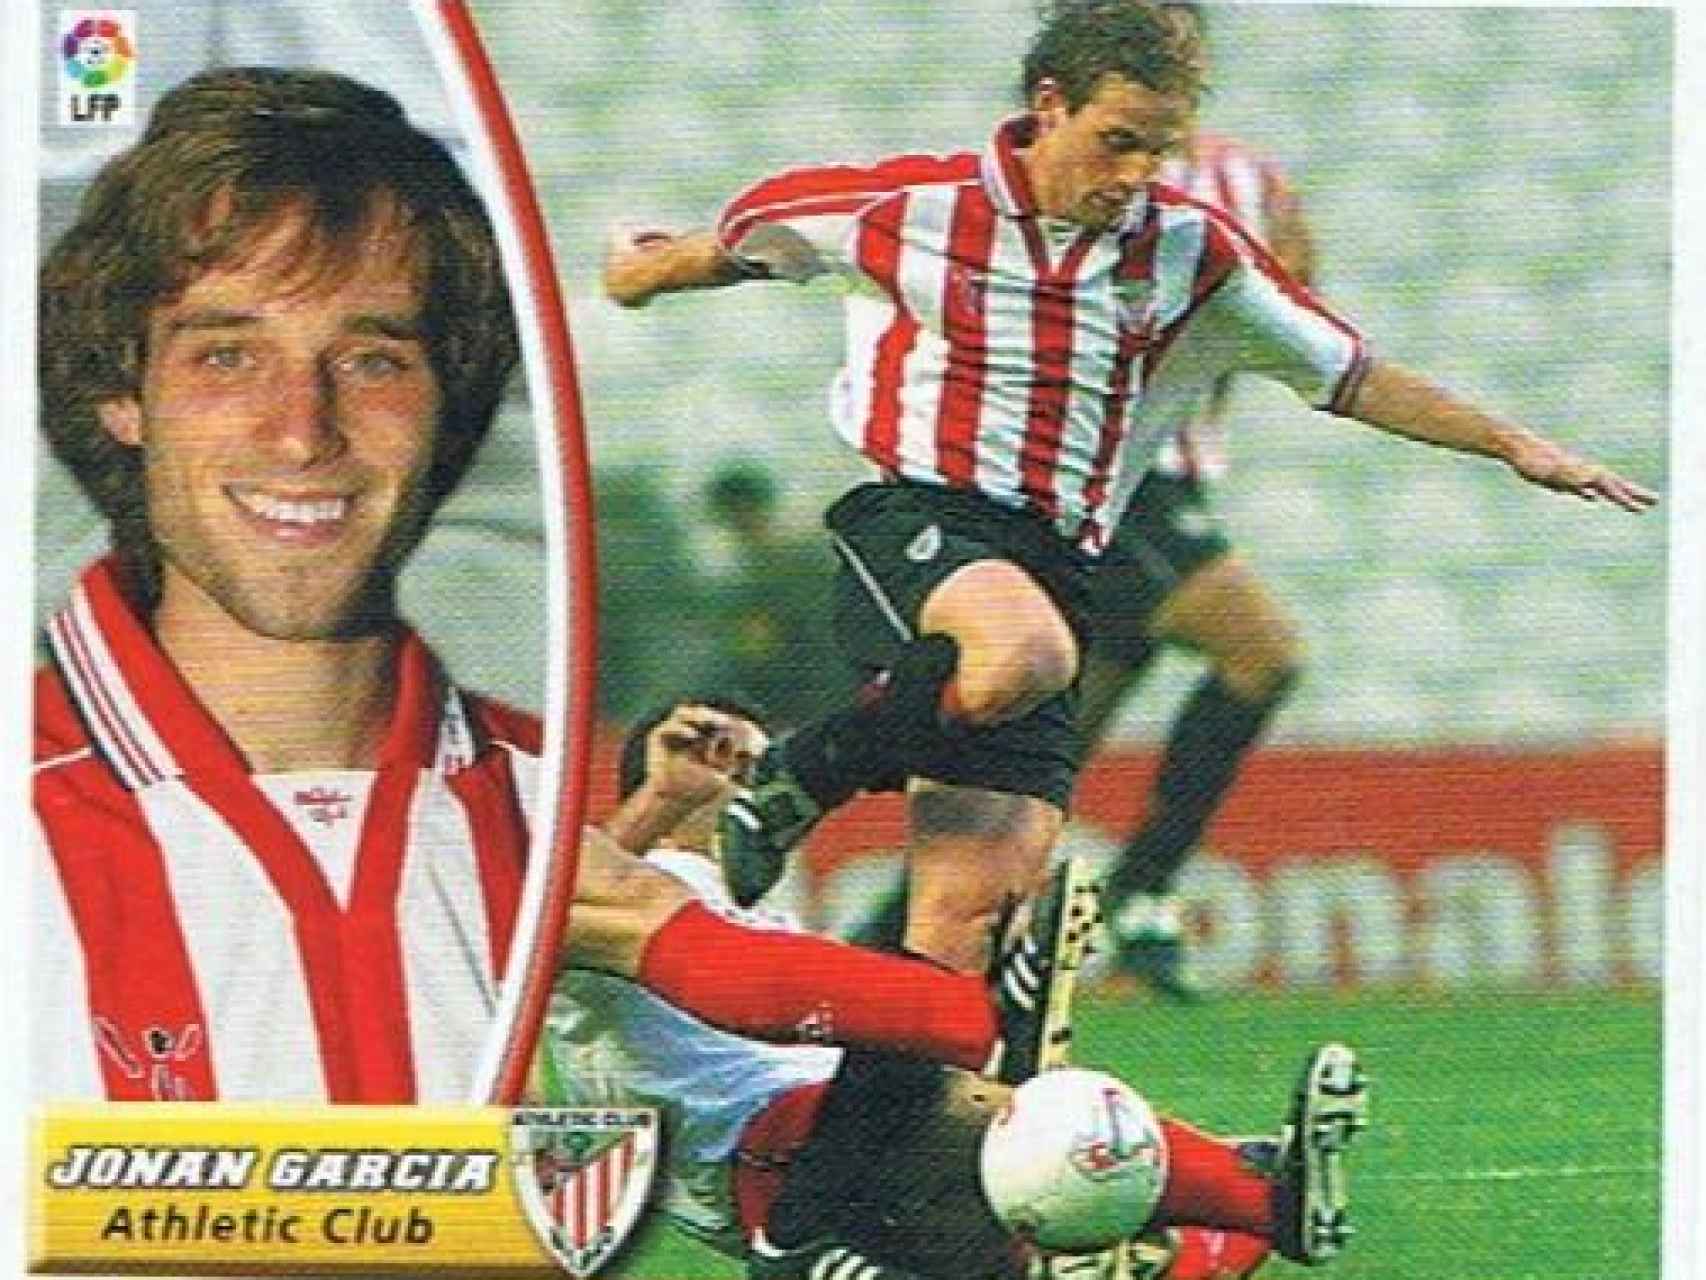 Cromo de Jonan García de la temporada 2003-2004.